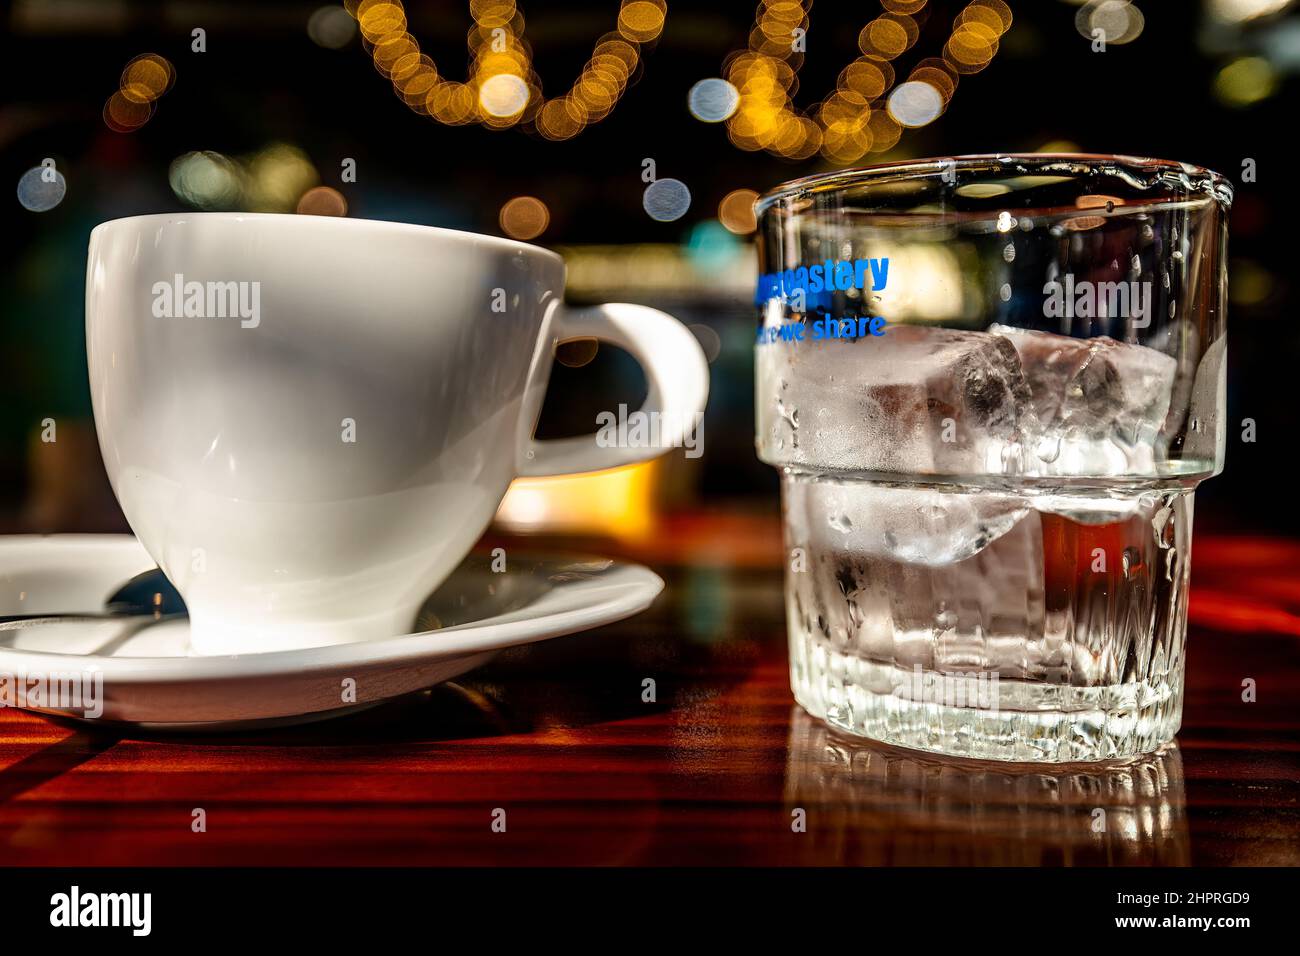 Une tasse blanche et un verre transparent avec de la glace sur une table en bois. Banque D'Images